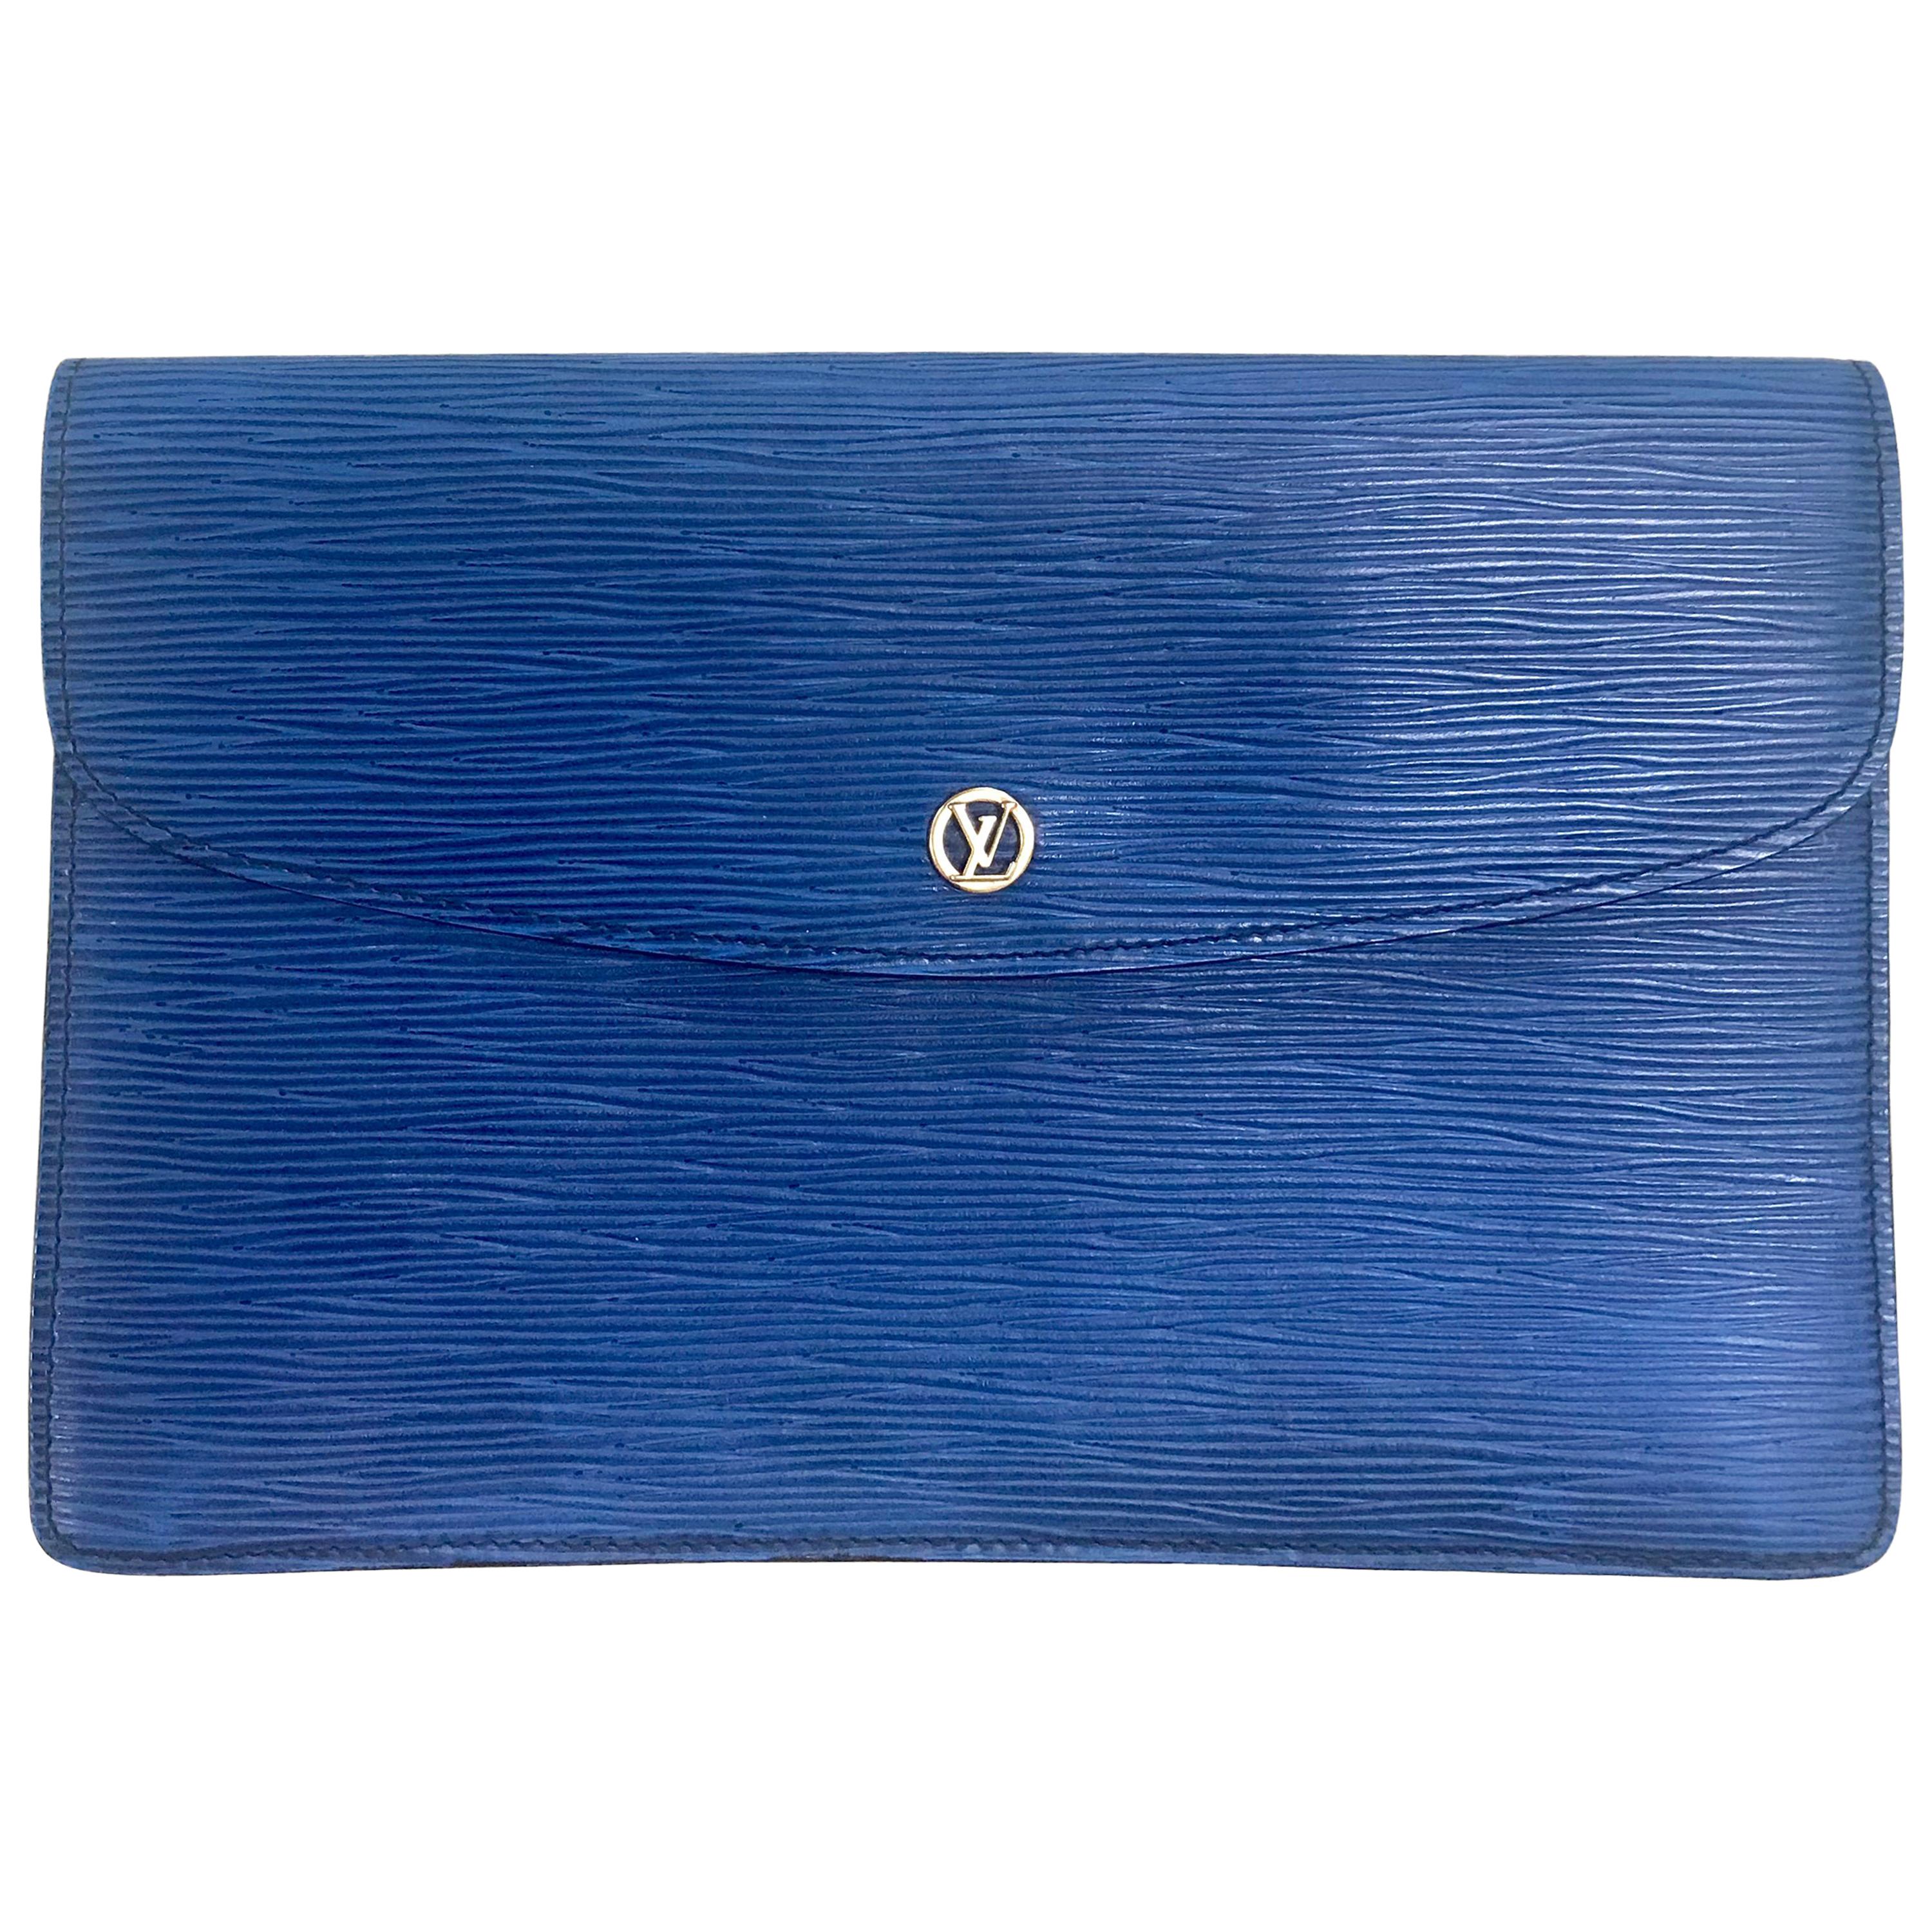 Vintage Louis Vuitton blue epi envelope style clutch bag with gold tone LV motif For Sale